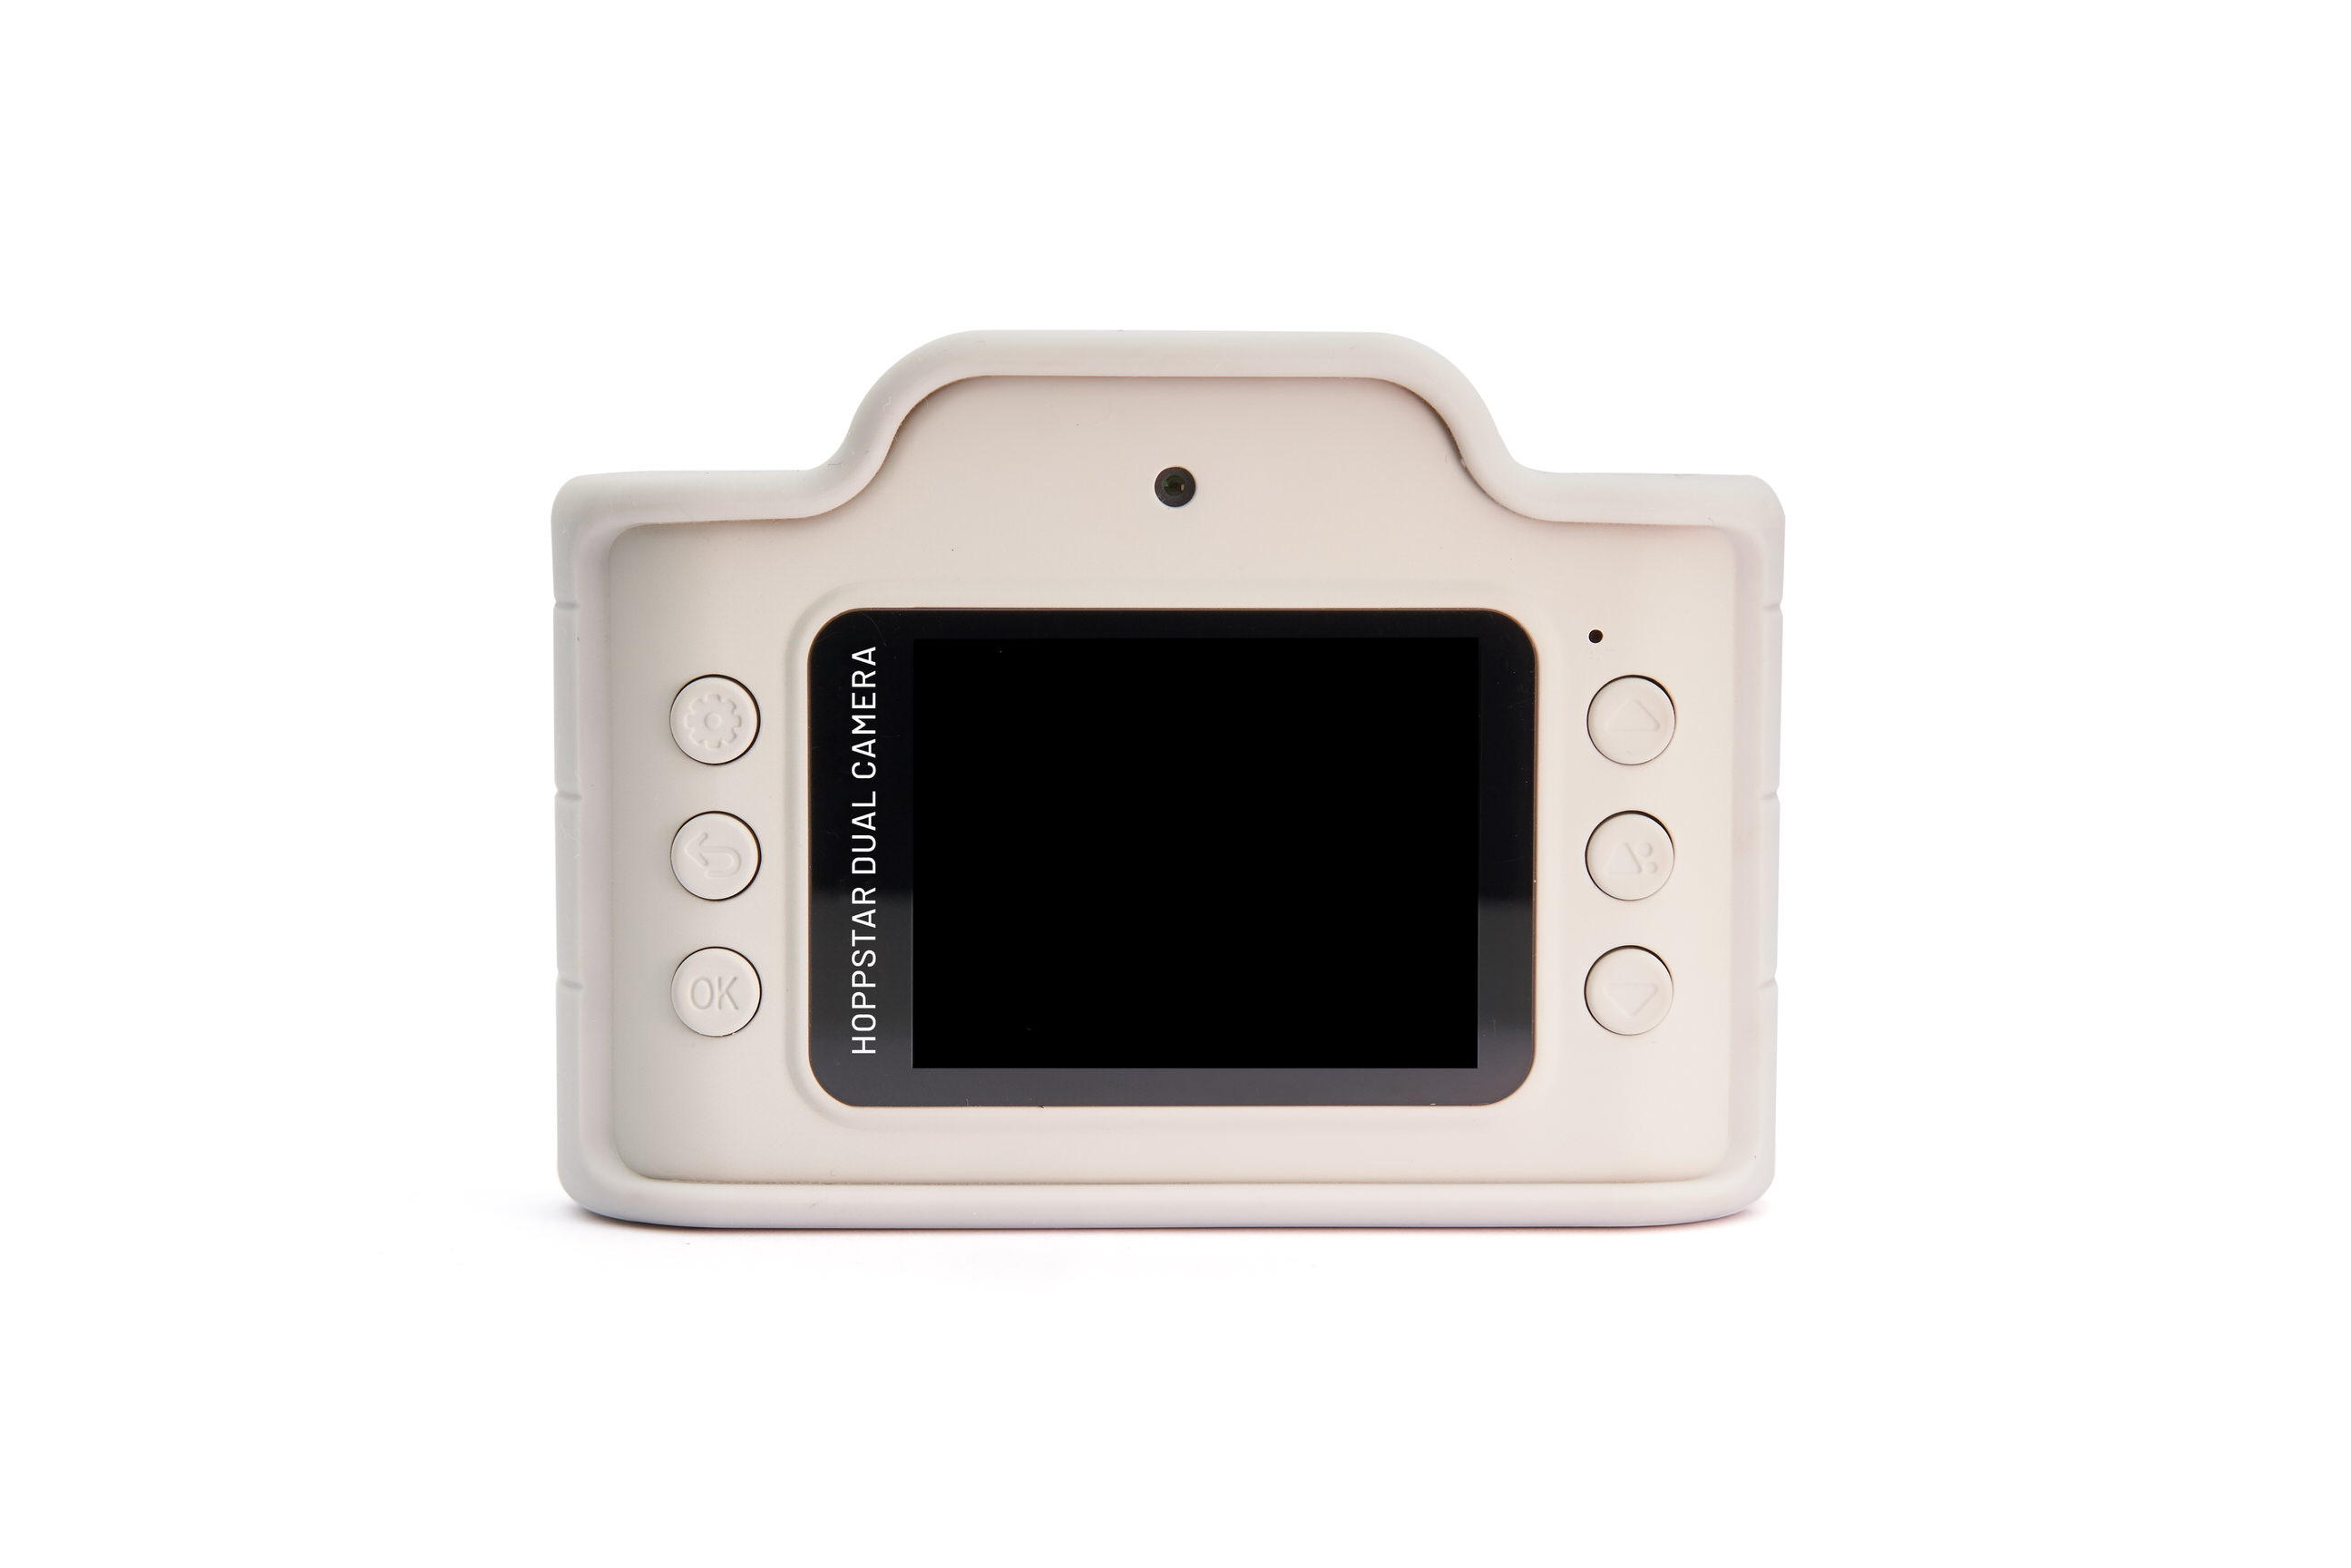 Hoppstar Expert Kamera mit Siena (braun/weiß) Silikonhülle, Rückseite